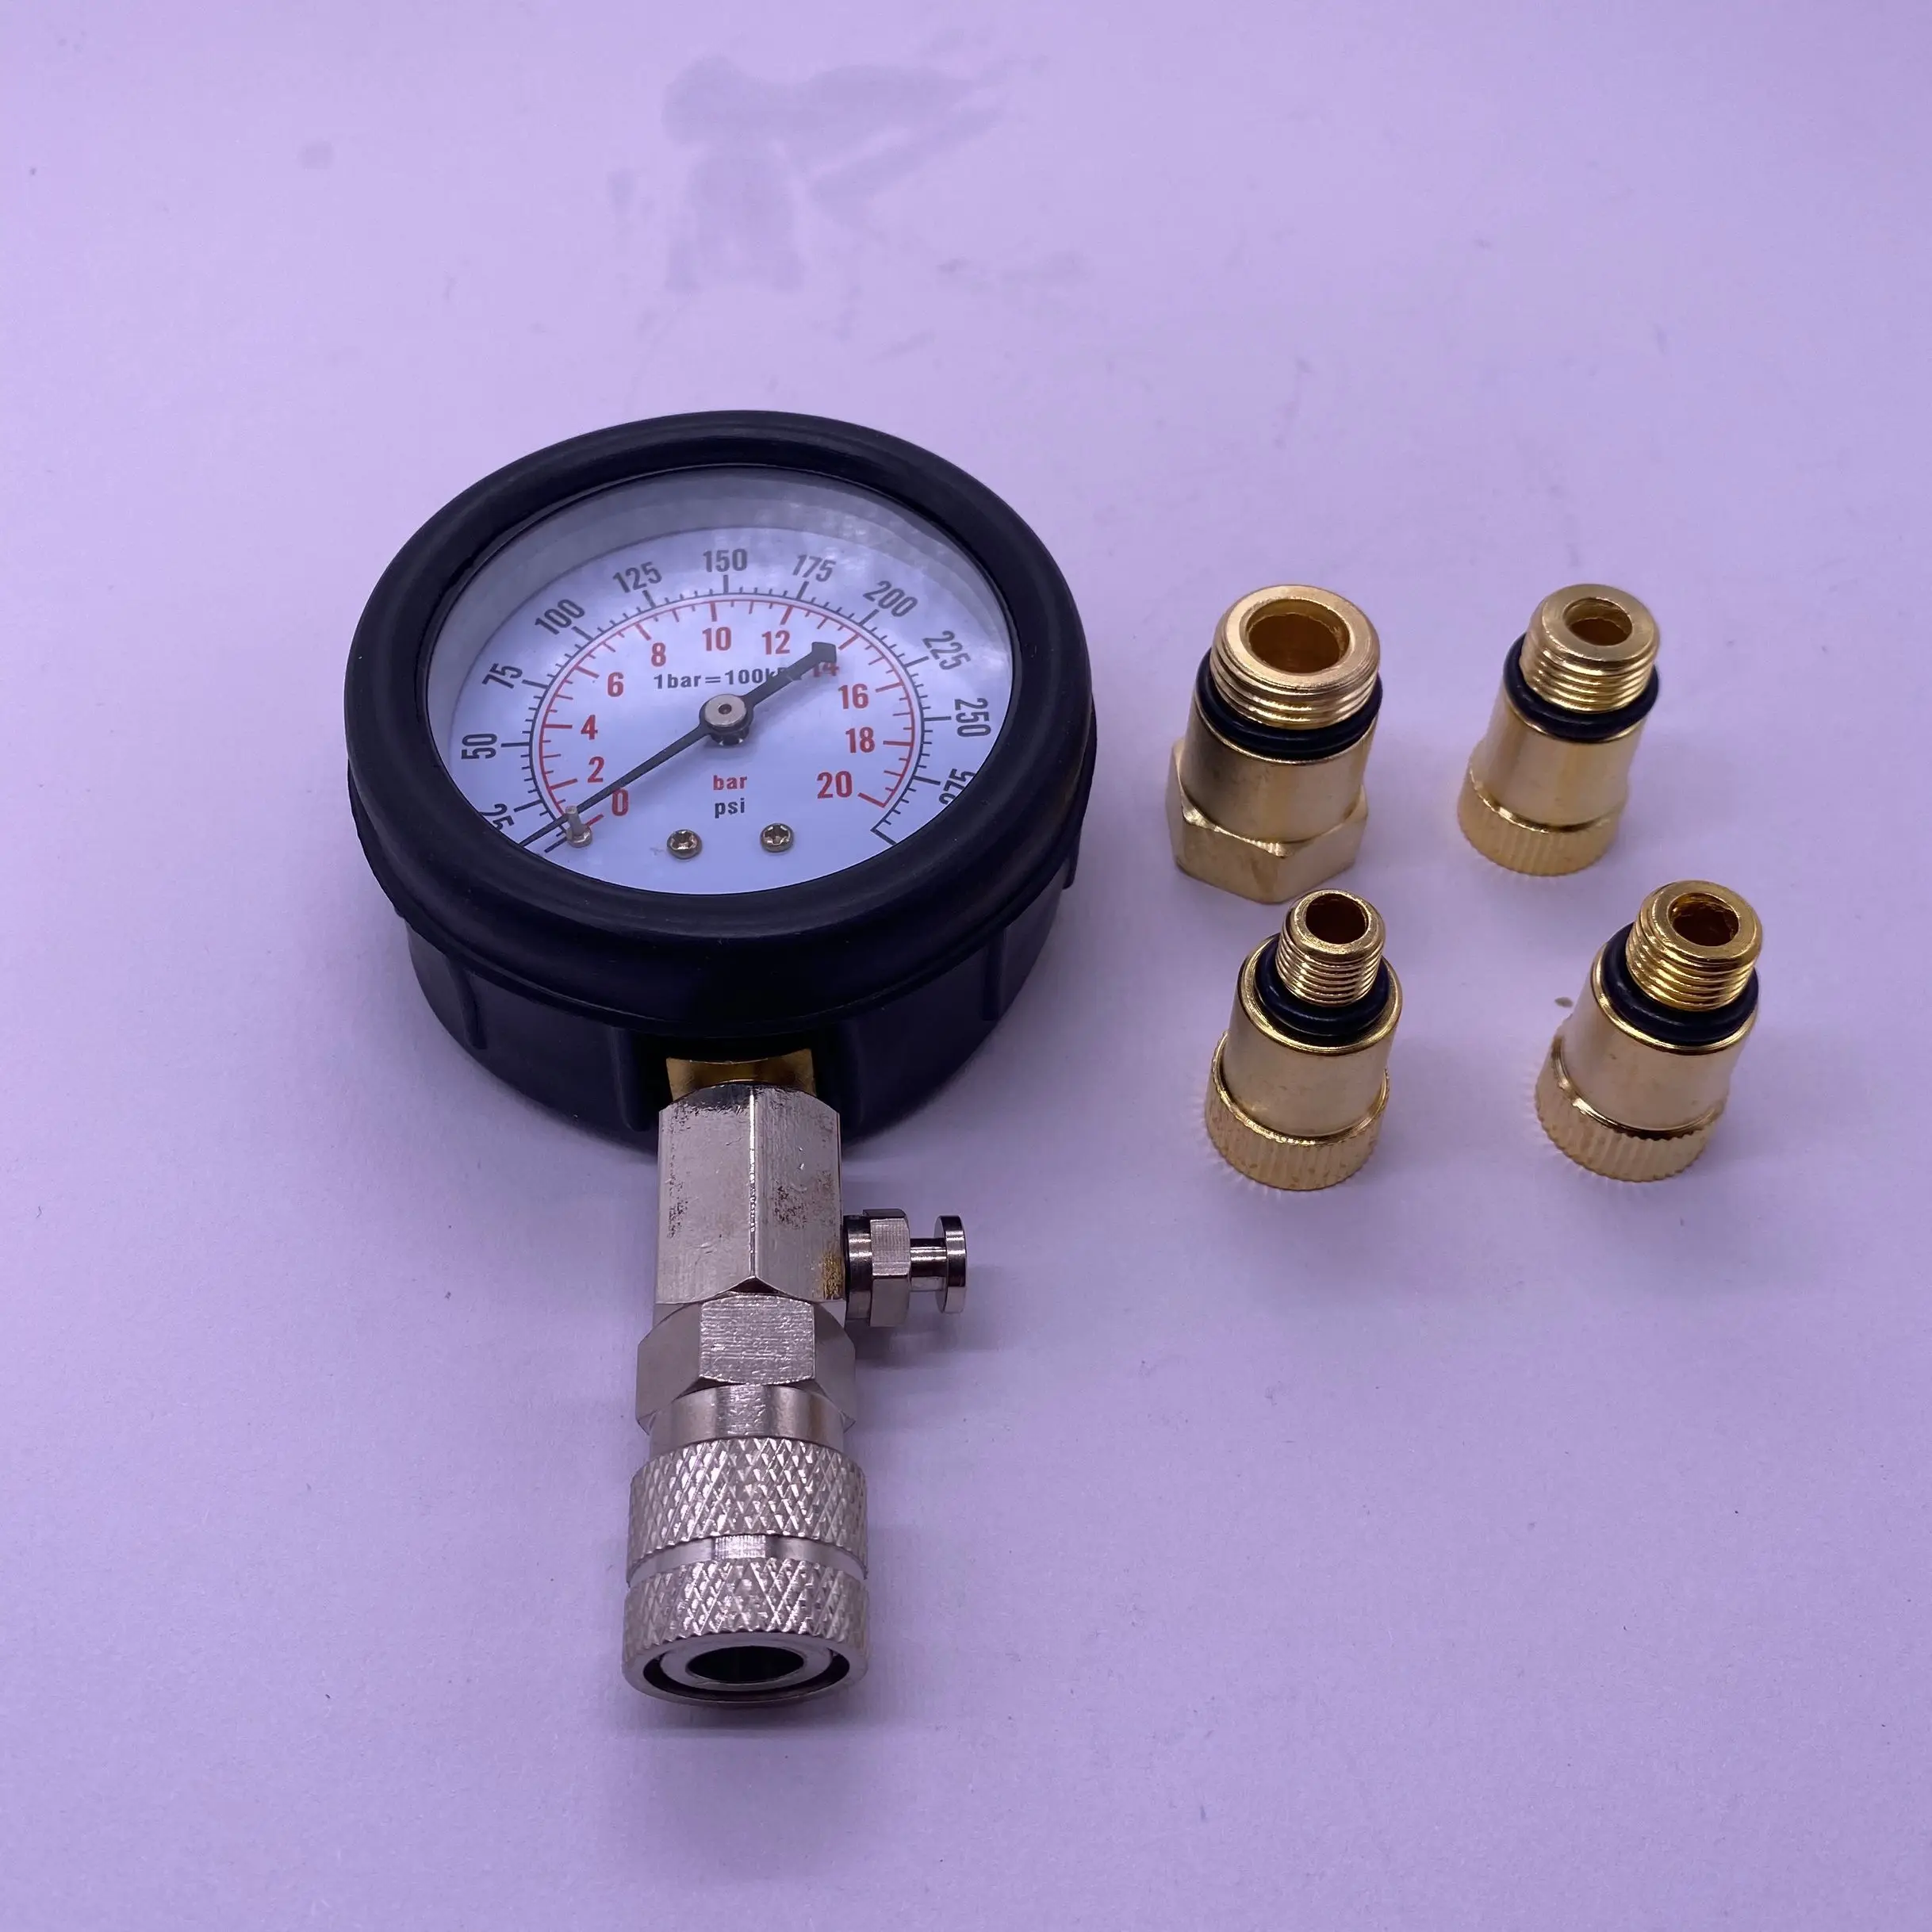 Moto Outil de Test de la jauge de Compression du Moteur Choix : testeur de Pression de Cylindre de Moteur Diesel détecteur de Fuite de Voiture Stock Britannique. 